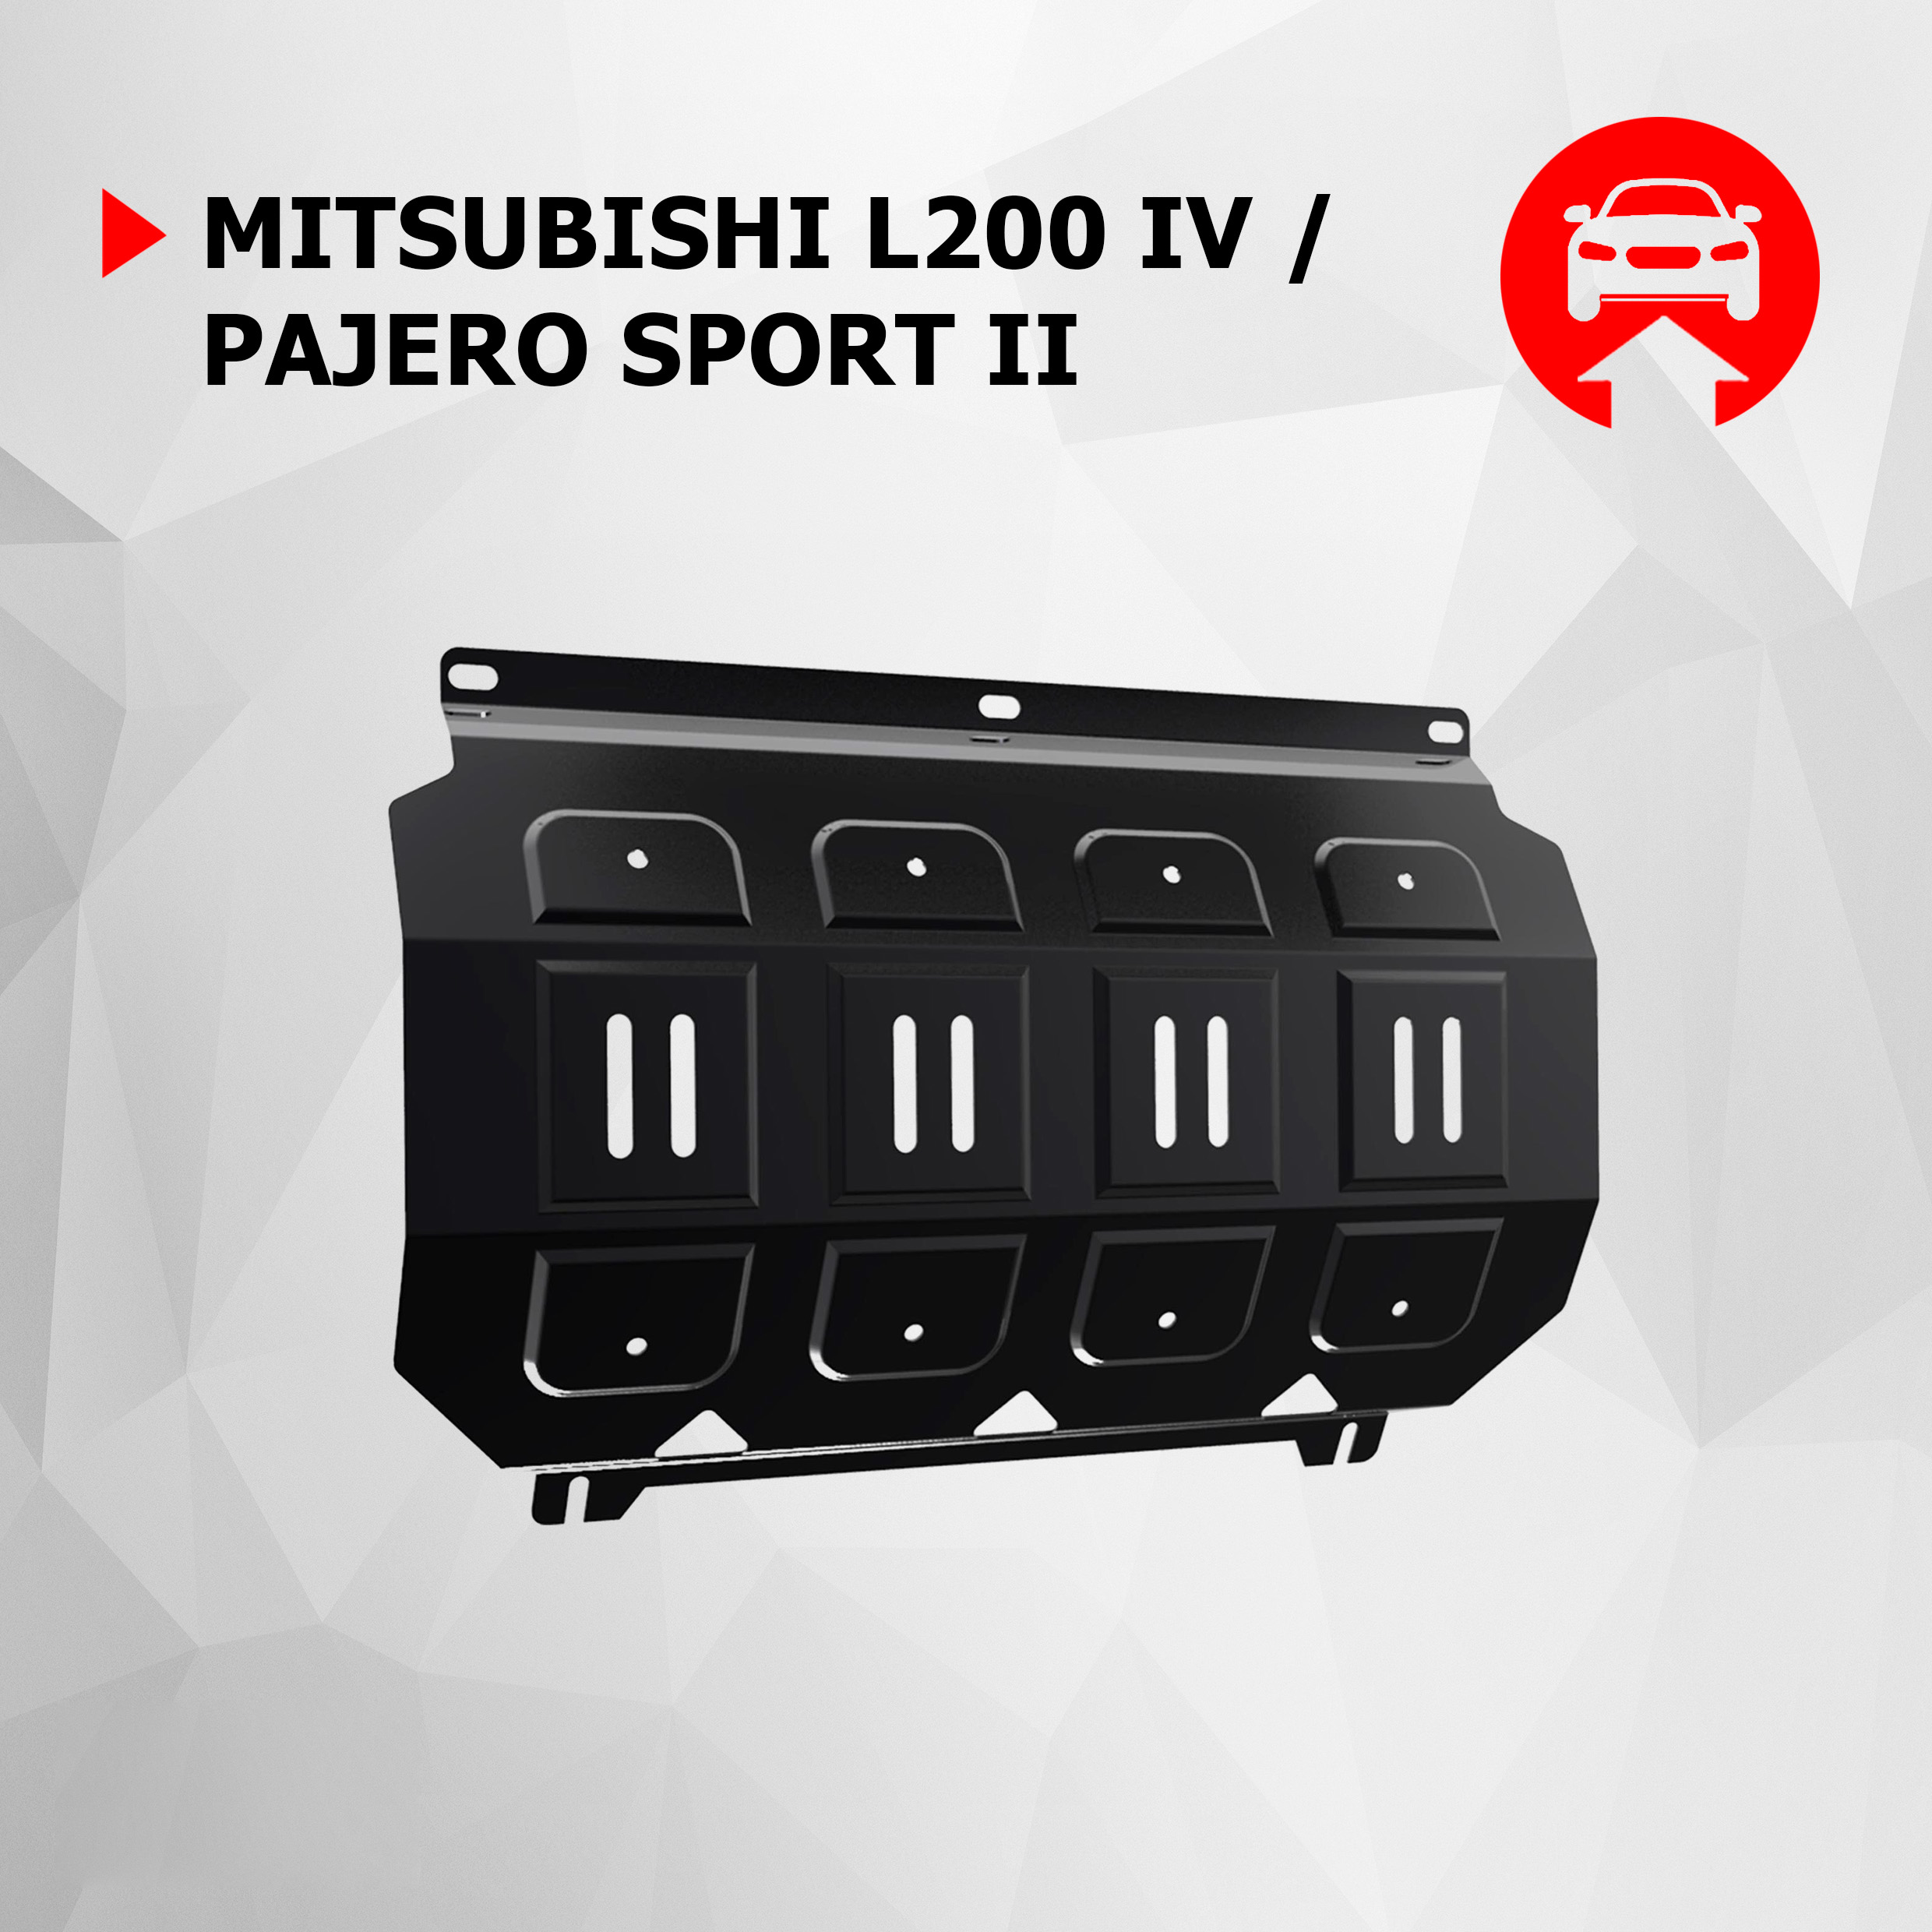 Защита радиатора АвтоБроня Mitsubishi L200 2006-2015/Pajero Sport 2008-2016, 111.04005.1, АвтоБРОНЯ, черный, сталь  - купить